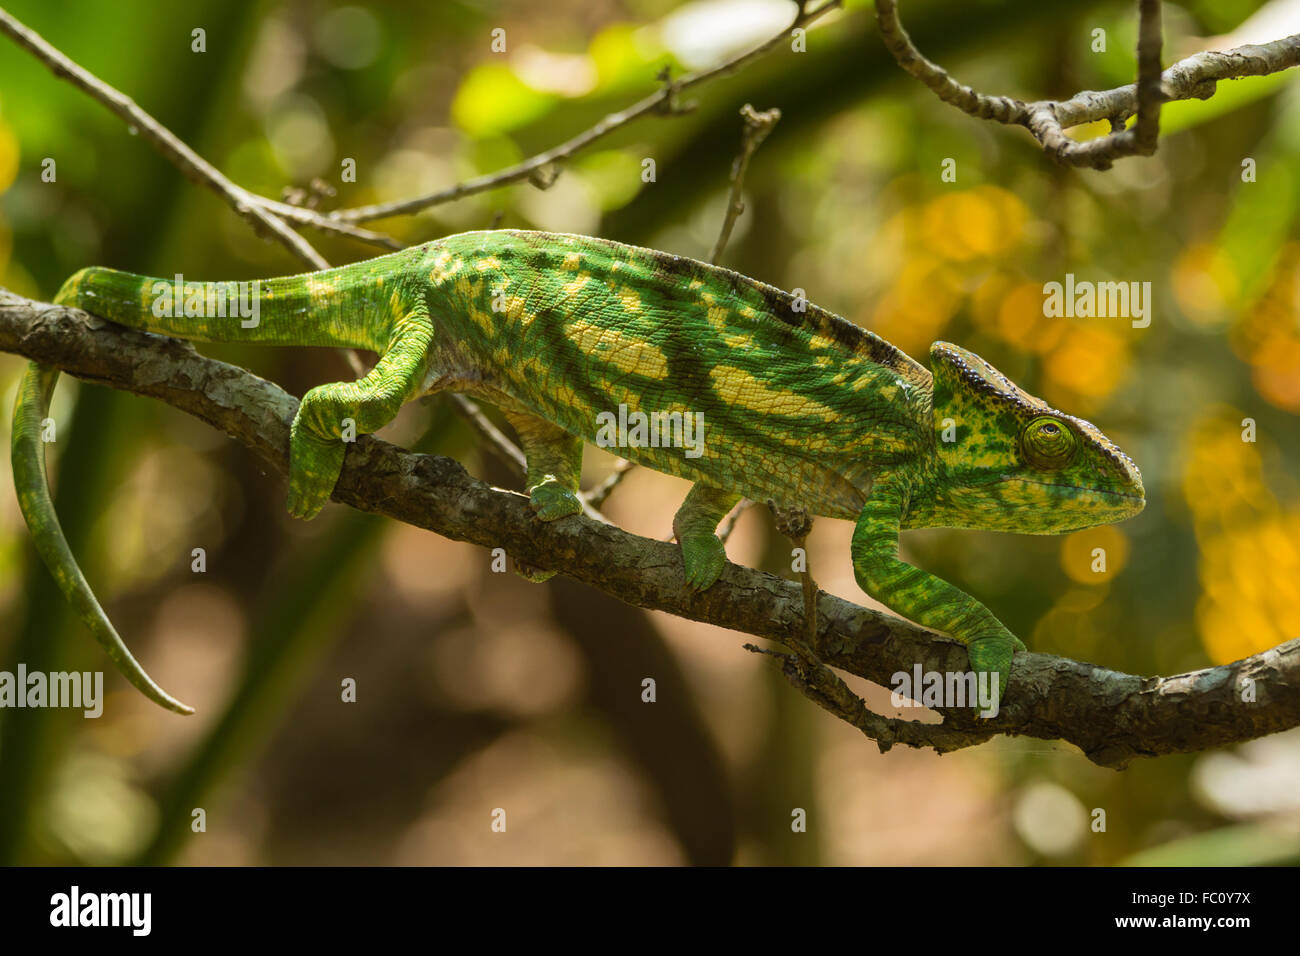 Chameleon, Madagascar Stock Photo